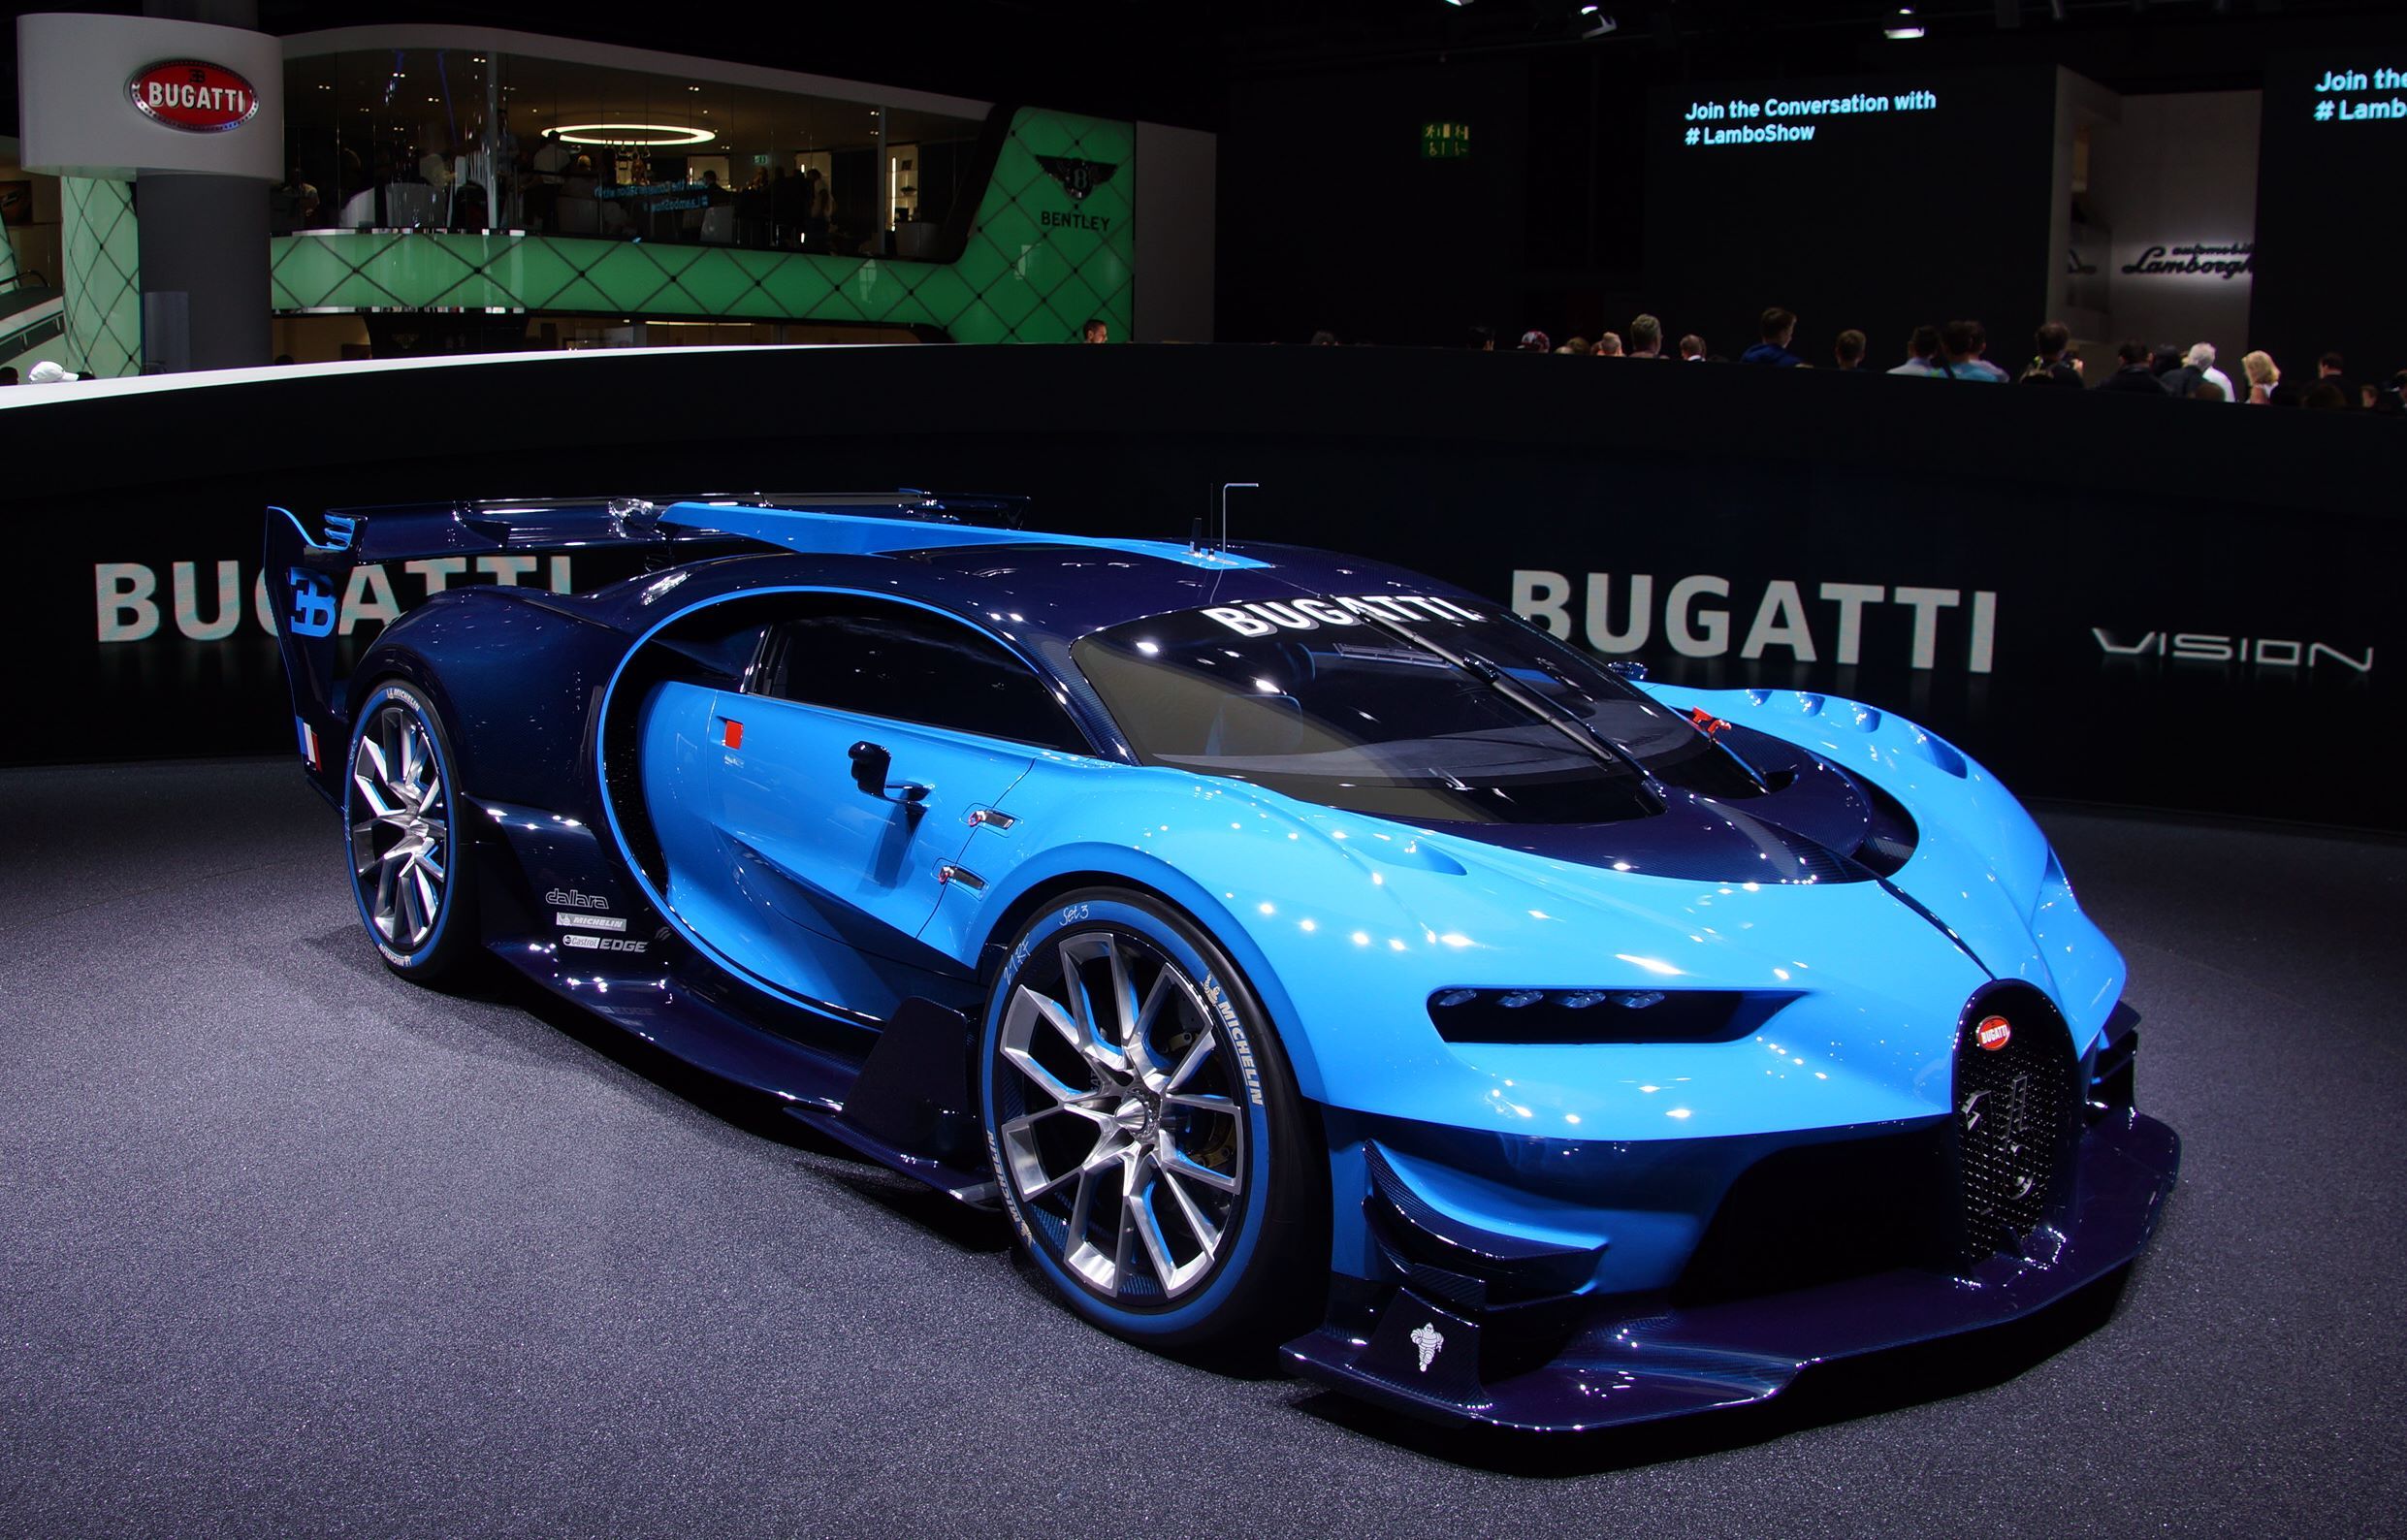 Bugatti_Vision_at_IAA_2015_in_Frankfurt.jpg